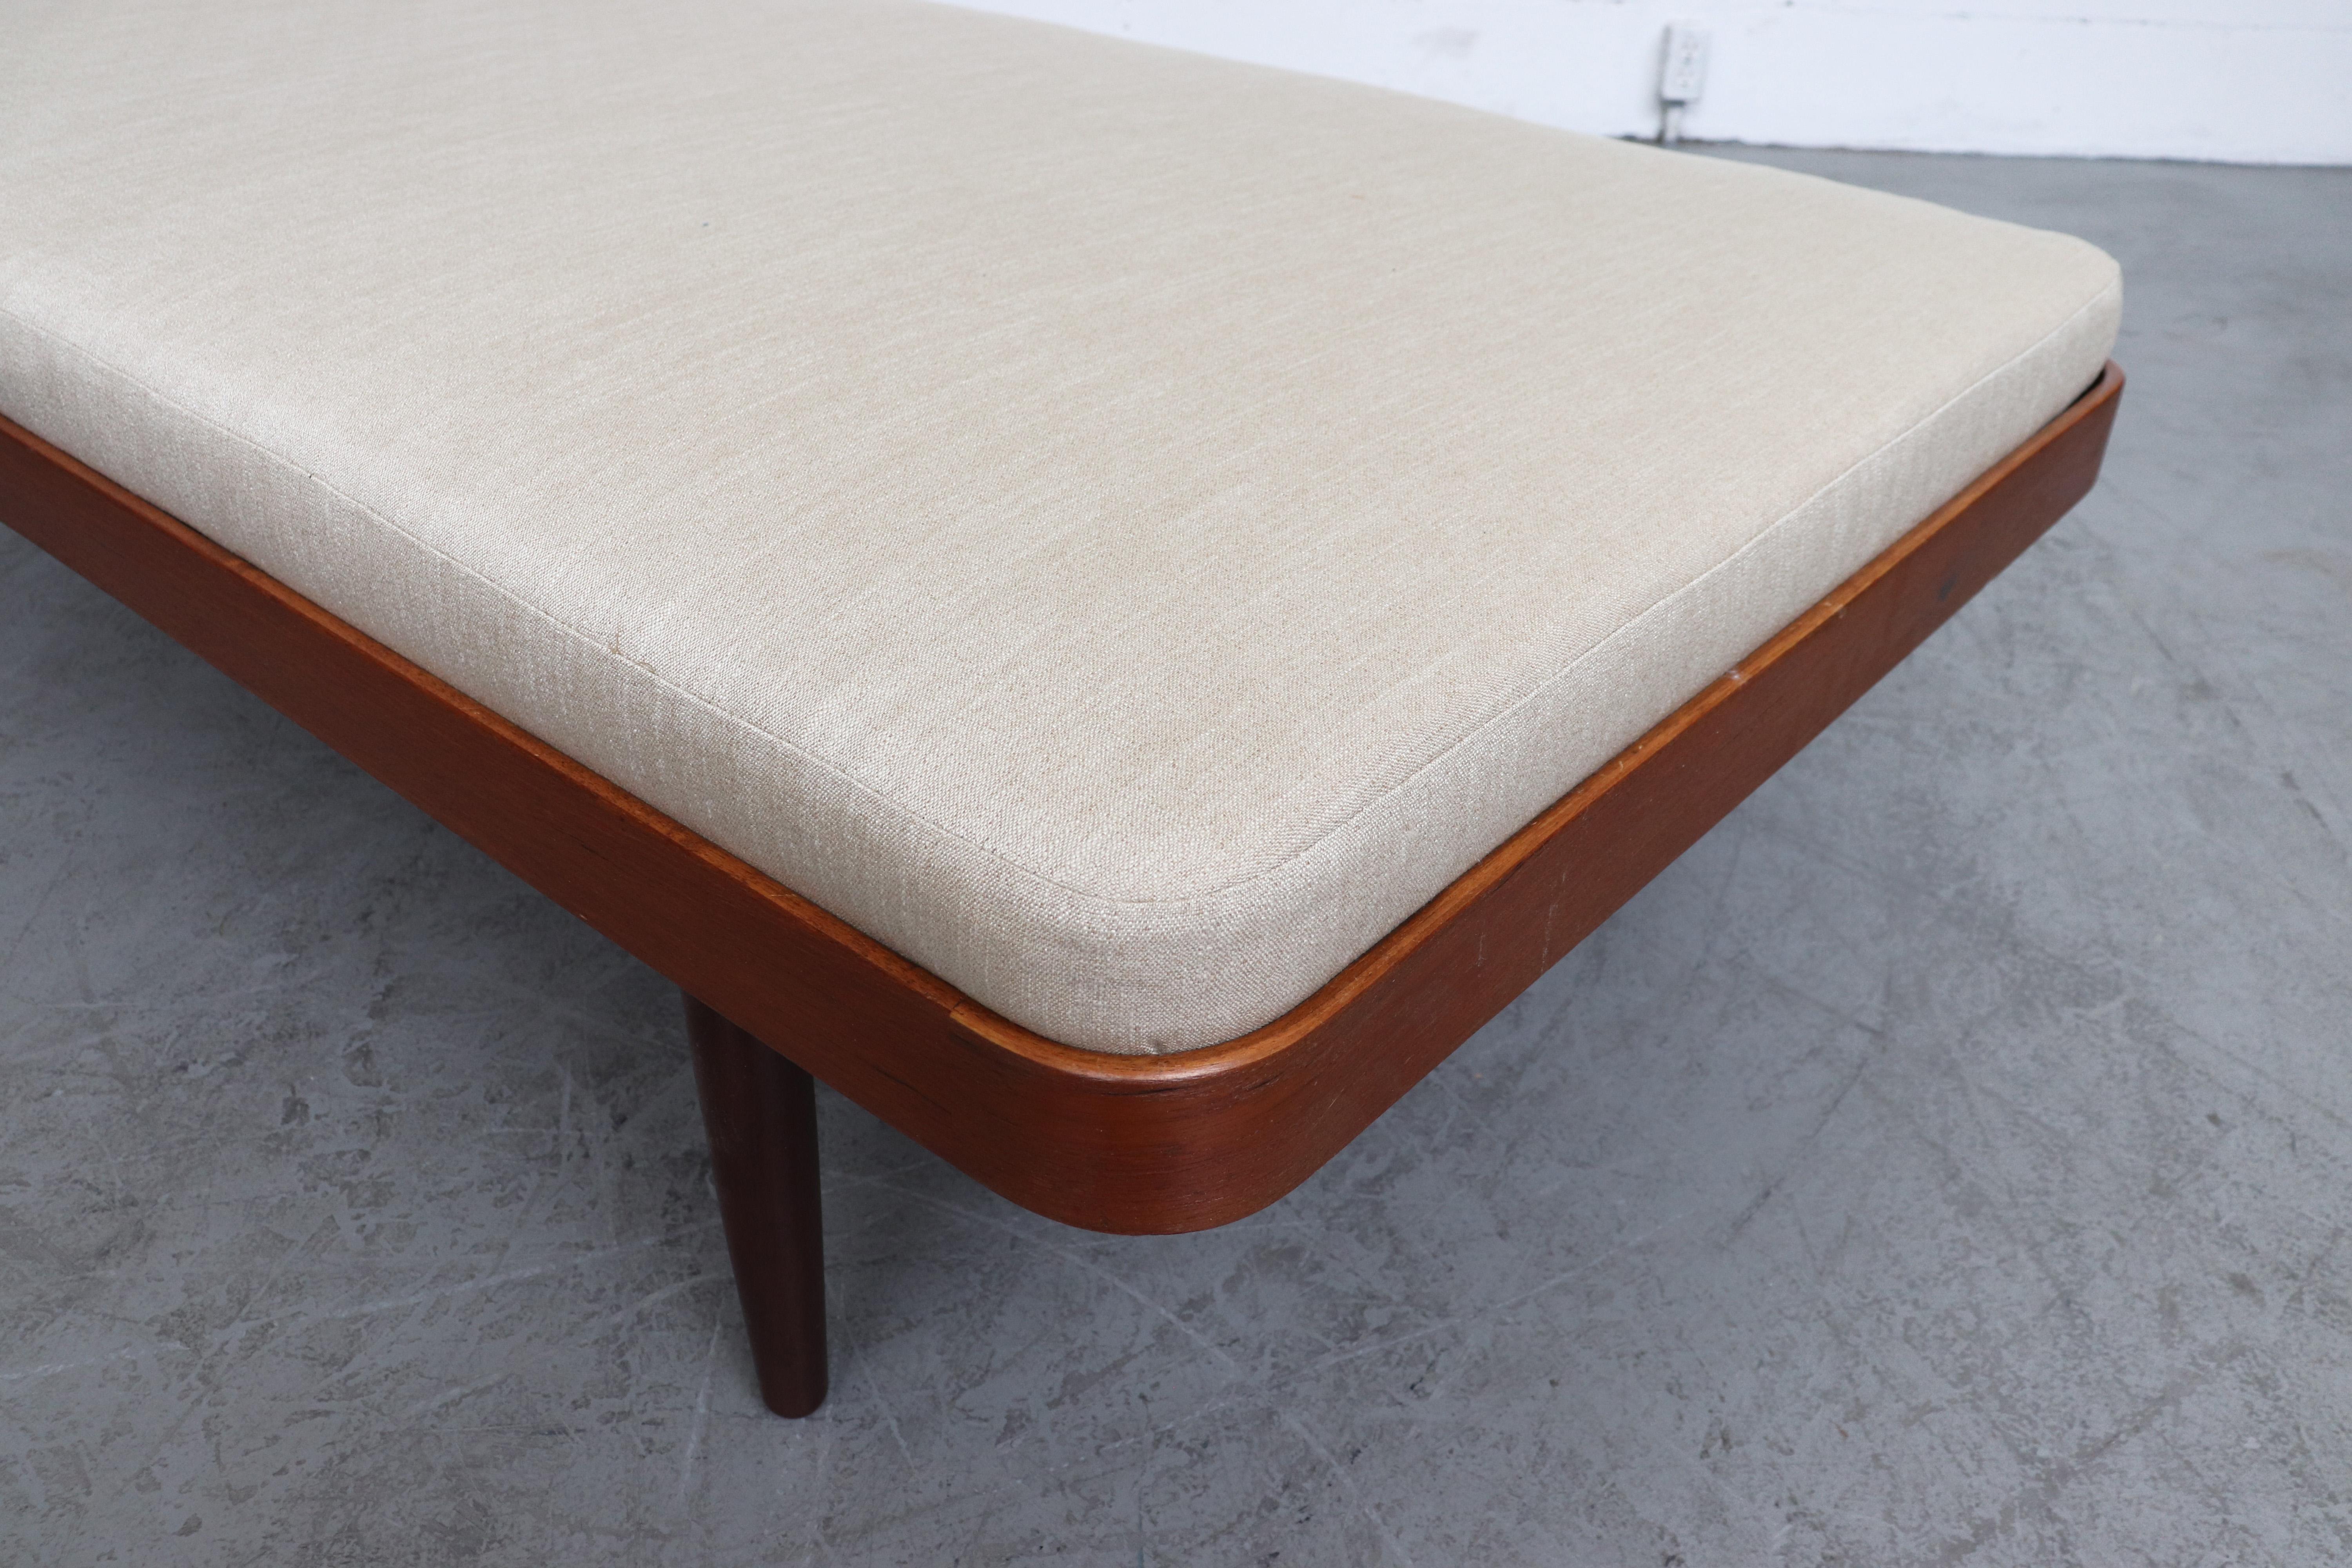 Upholstery Hans Wegner Inspired Danish Teak Day Bed with Bone Mattress